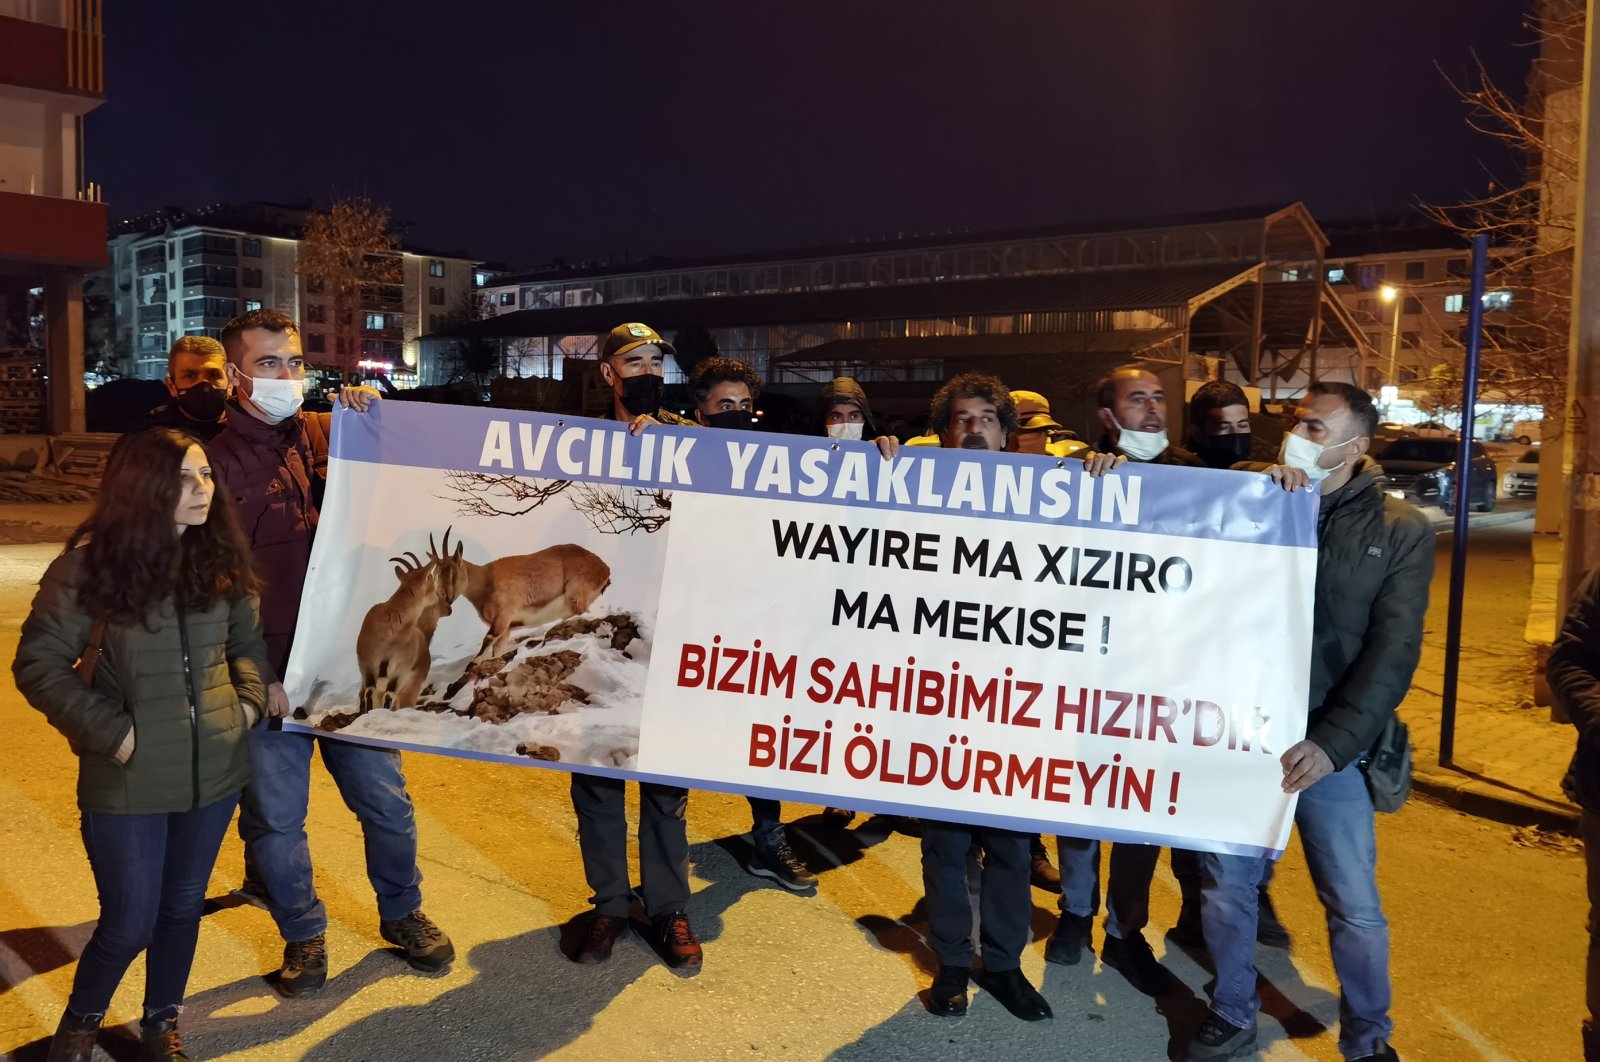 Pemburu Spanyol memicu kemarahan di Tunceli Turki